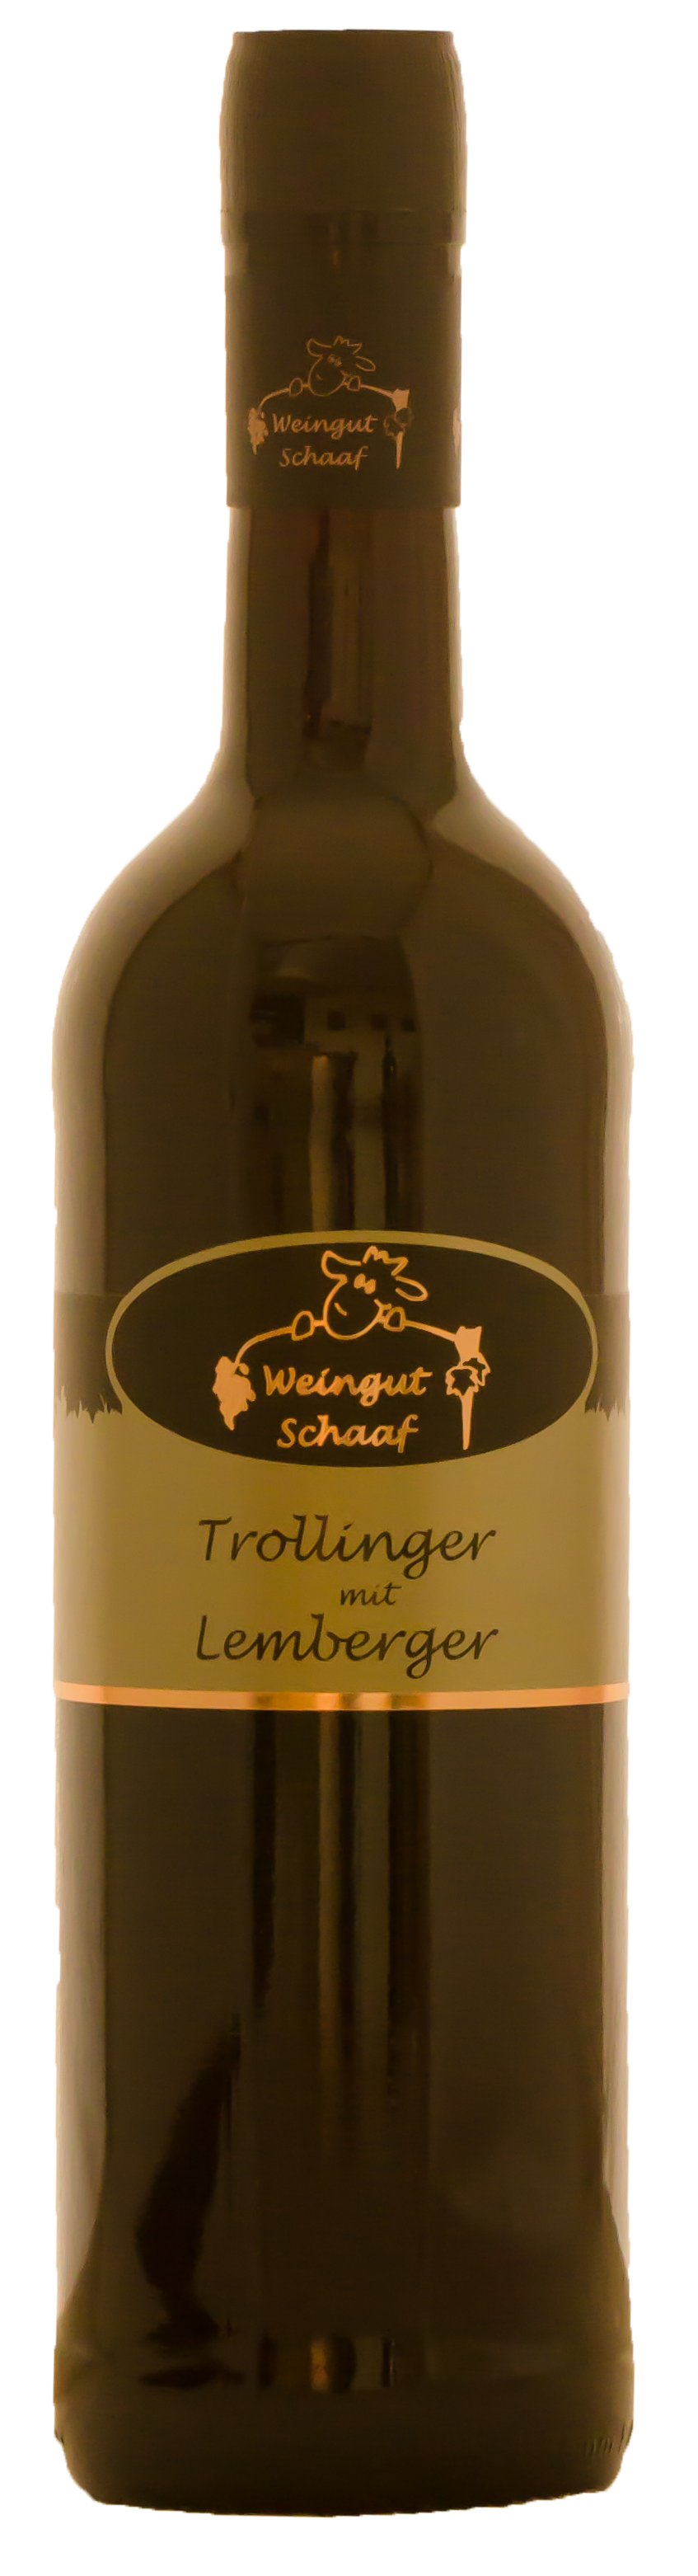 2018 Trollinger mit Lemberger Terrassenlage 0,75 L - Weingut Schaaf